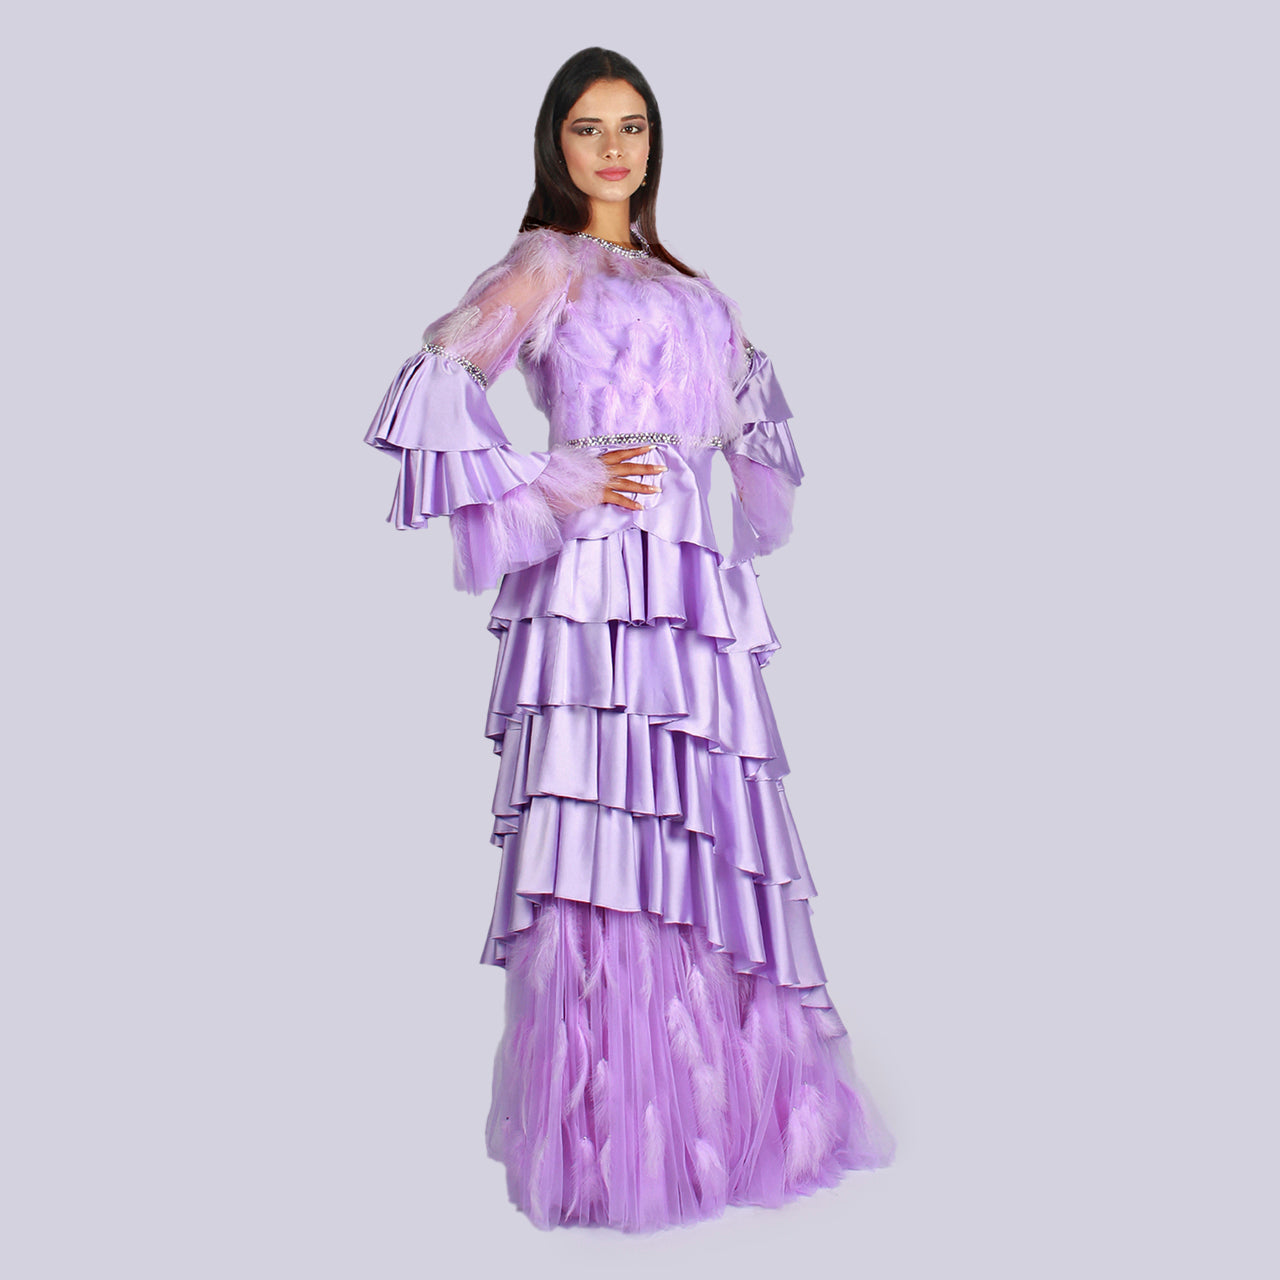 Senorita - Enchanted Feathers Tiered Ruffle Dress